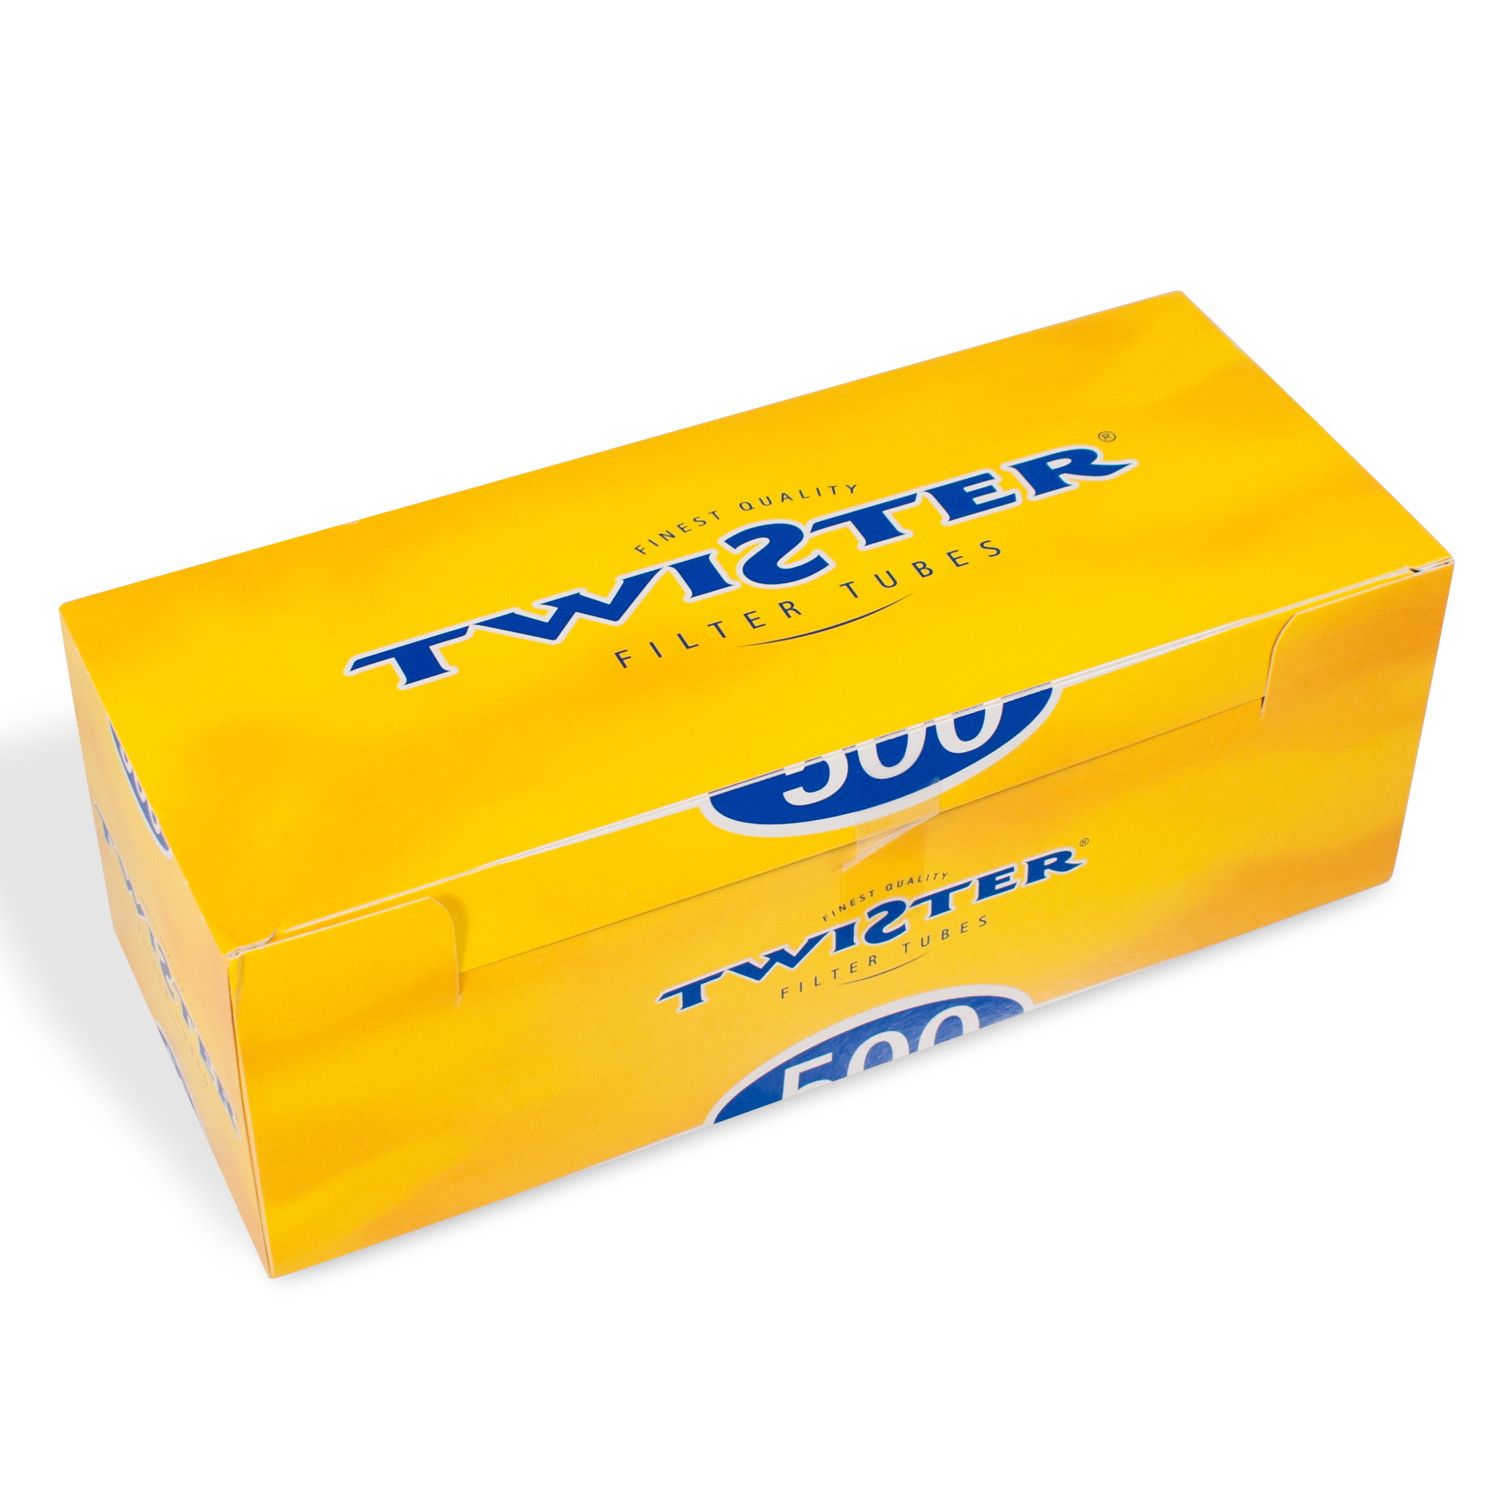 Twister Hülsen - 1.000 Stück in 2 praktischen Packungen à 500 Stück 